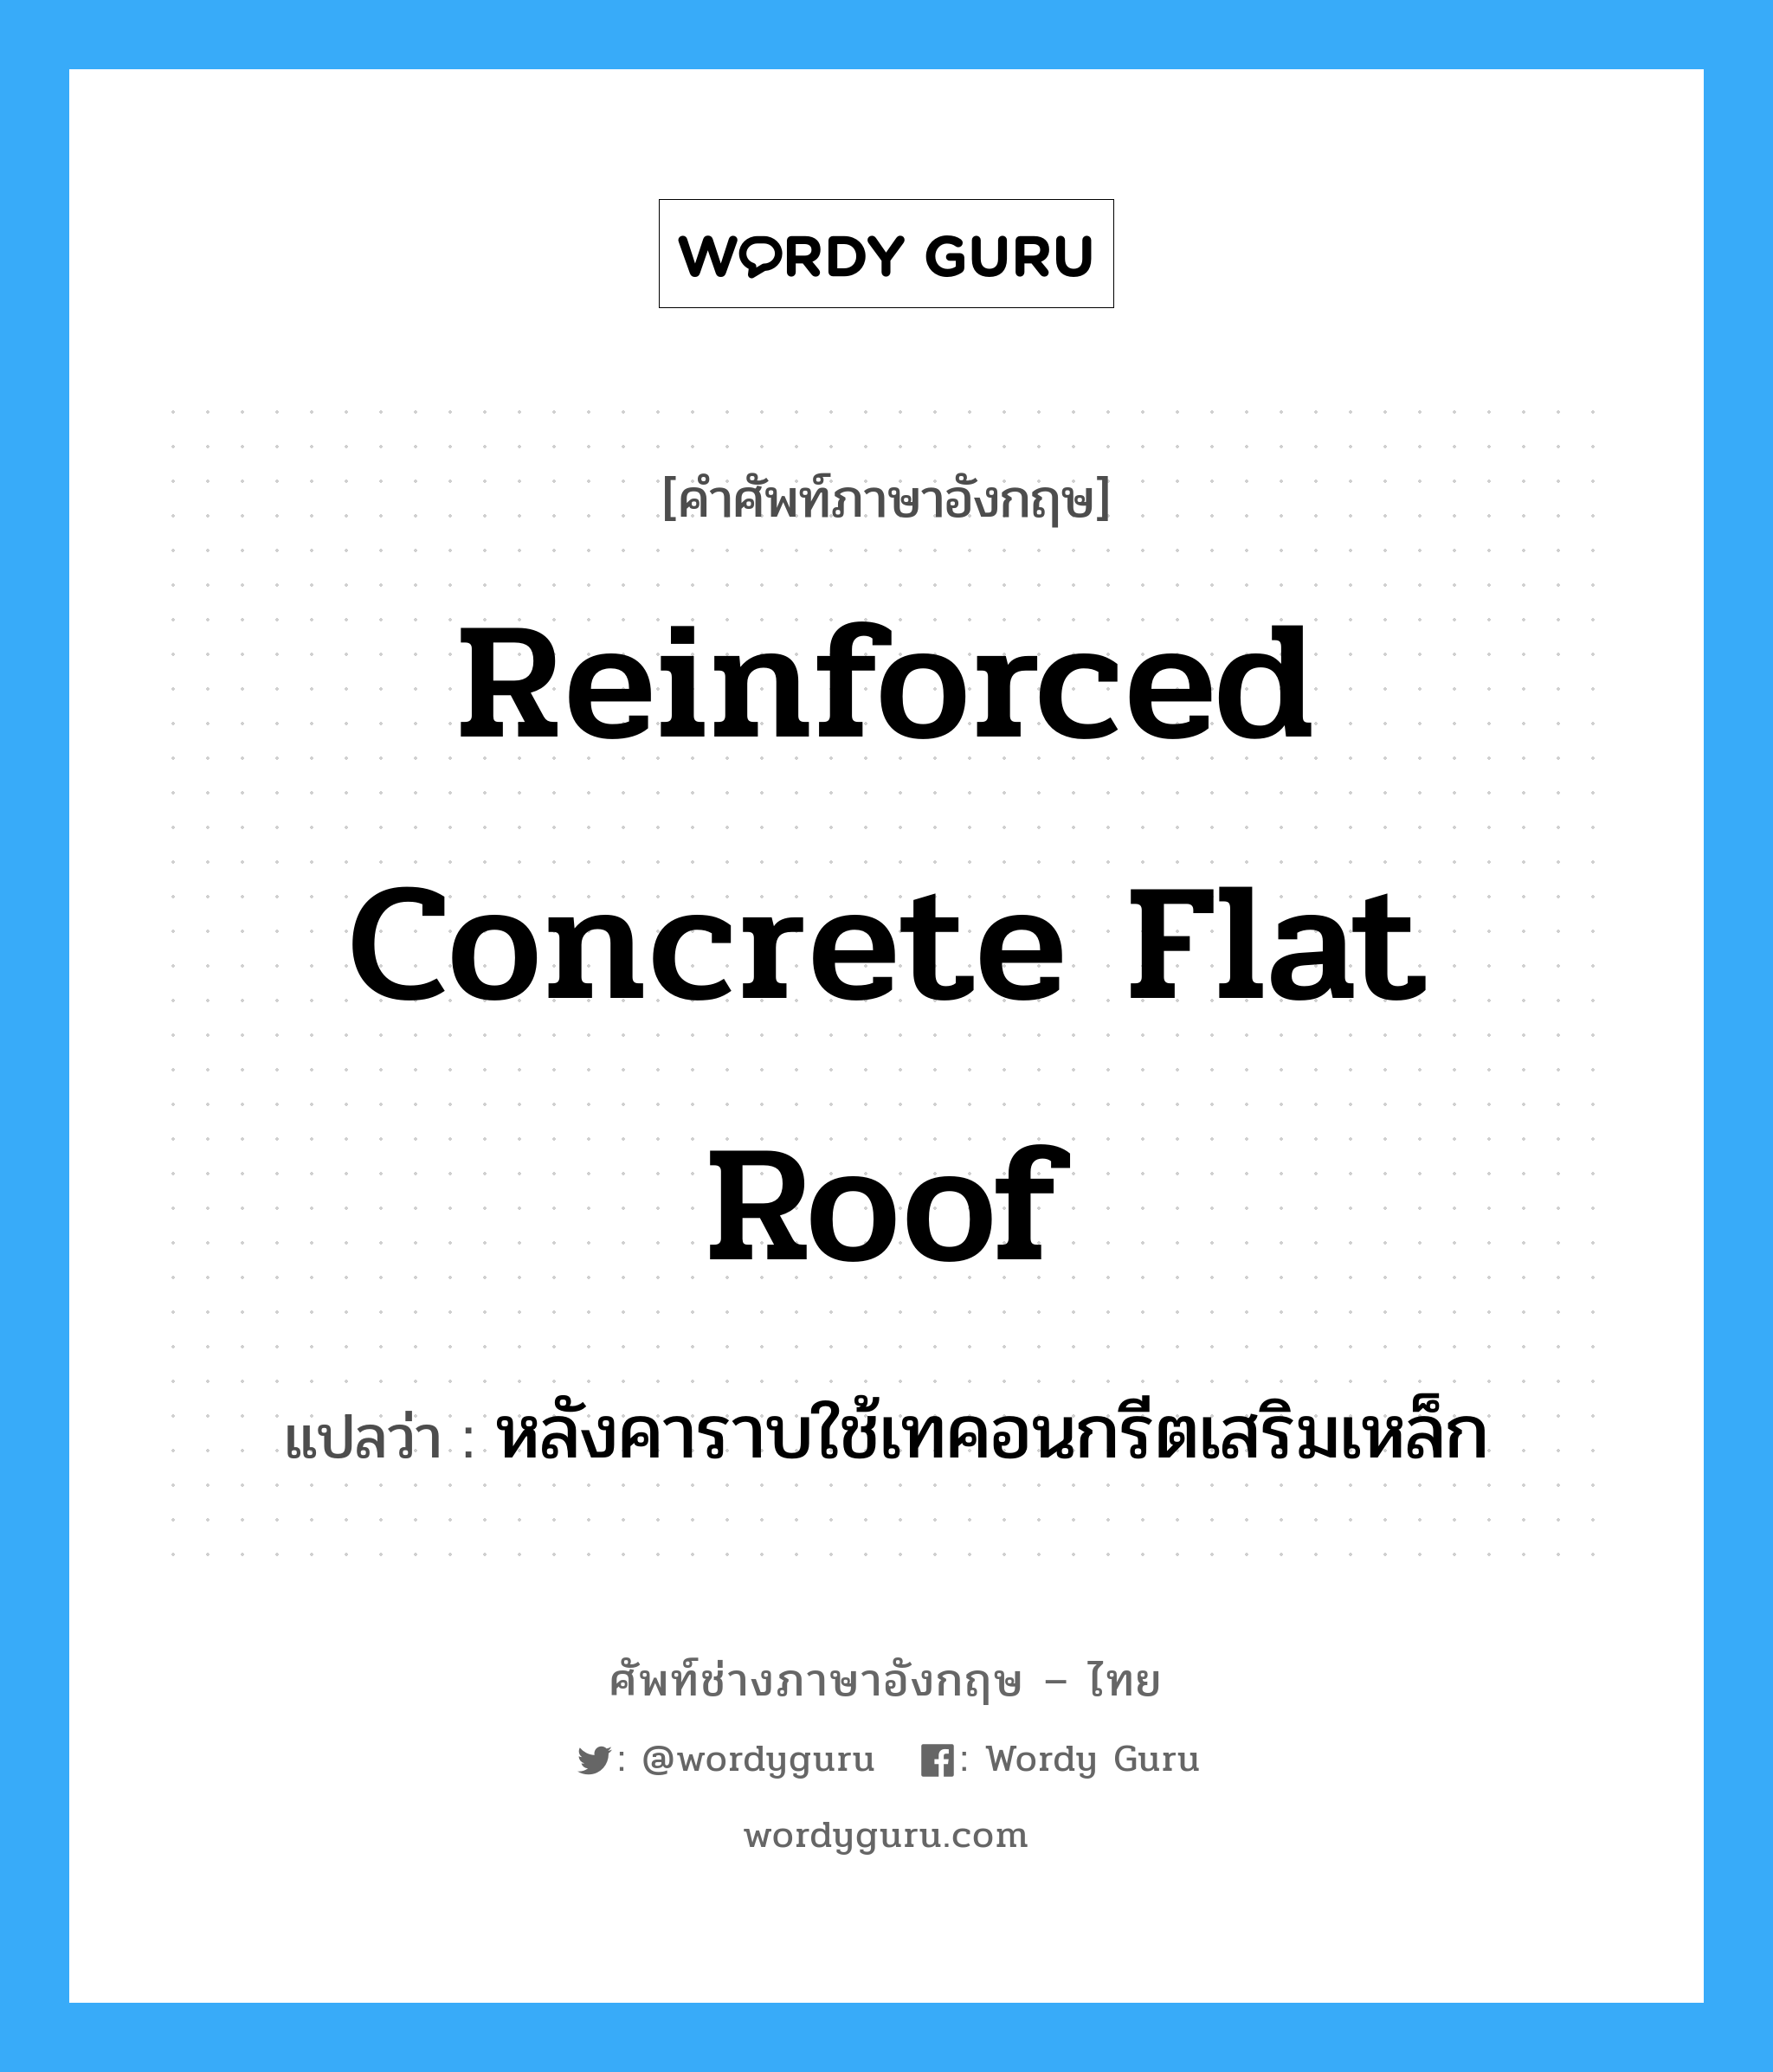 หลังคาราบใช้เทคอนกรีตเสริมเหล็ก ภาษาอังกฤษ?, คำศัพท์ช่างภาษาอังกฤษ - ไทย หลังคาราบใช้เทคอนกรีตเสริมเหล็ก คำศัพท์ภาษาอังกฤษ หลังคาราบใช้เทคอนกรีตเสริมเหล็ก แปลว่า reinforced concrete flat roof